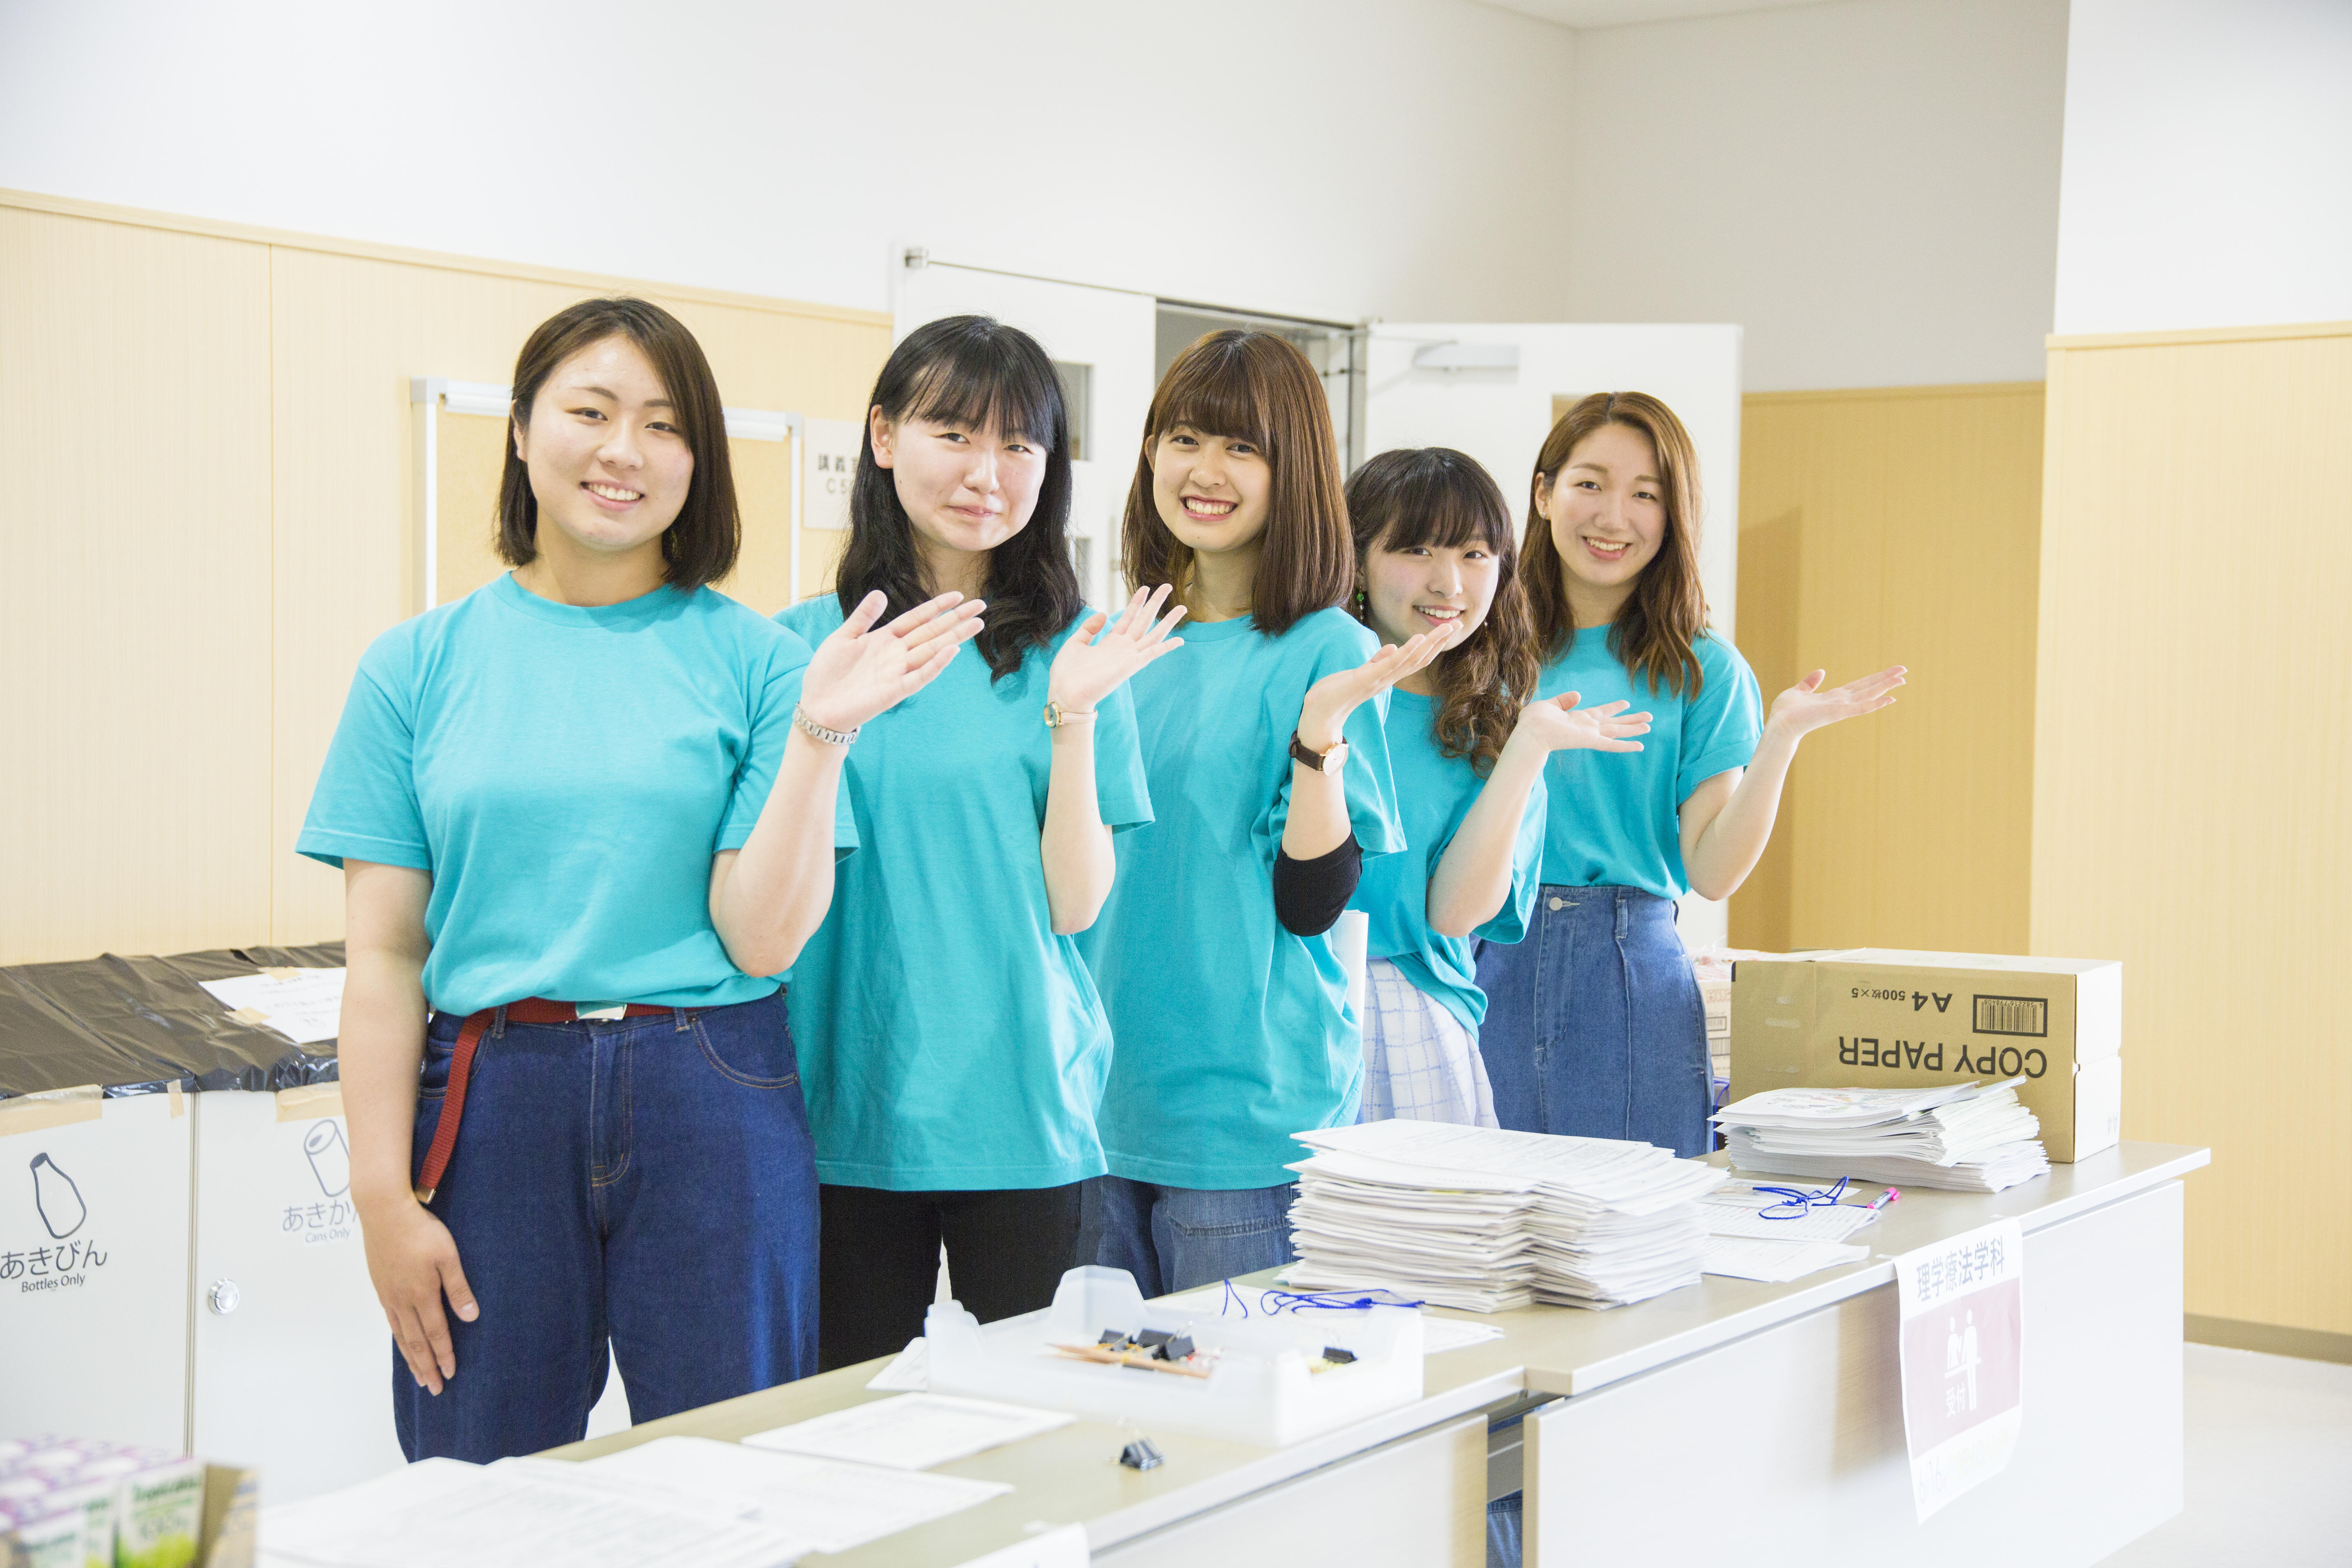 北海道医療大学が「春のオープンキャンパス」を開催 -- 在学生と楽しく医療の学びを体験